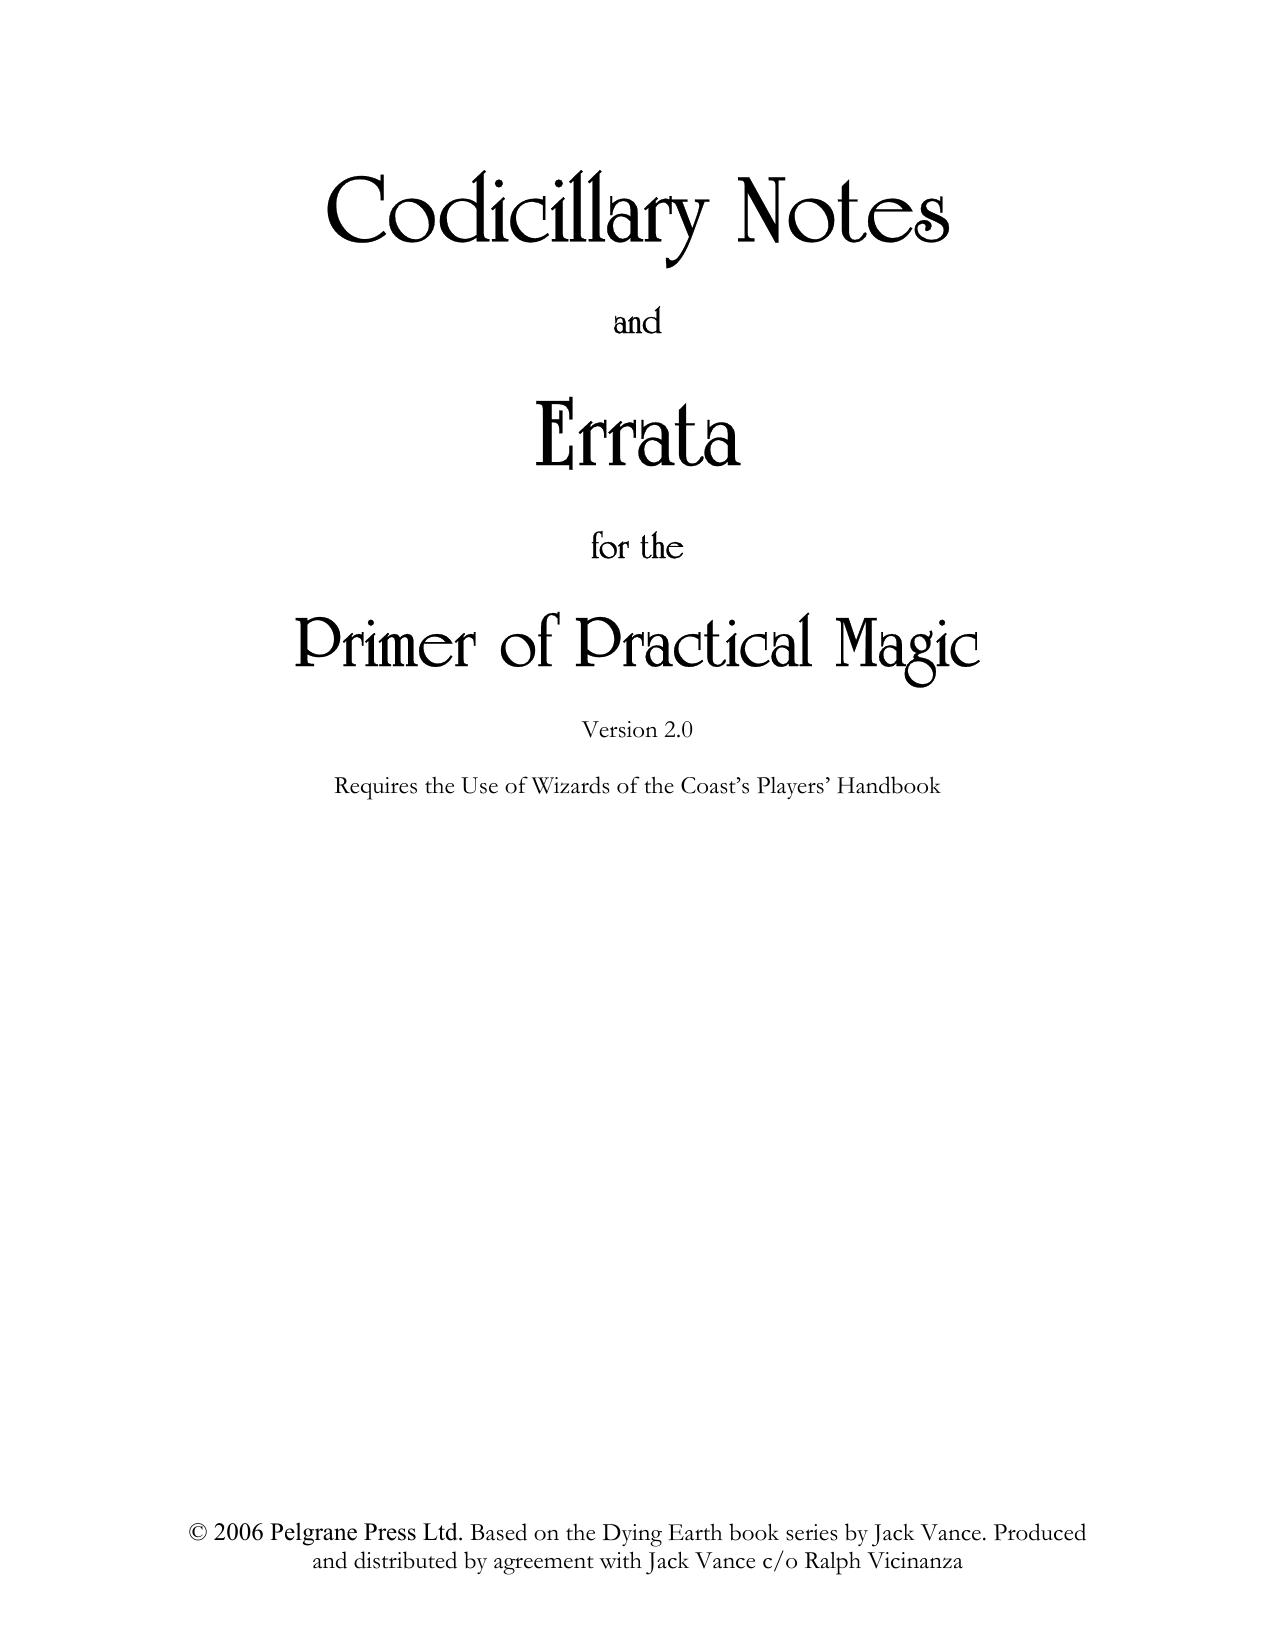 PEL009 Primer of Practical Magic